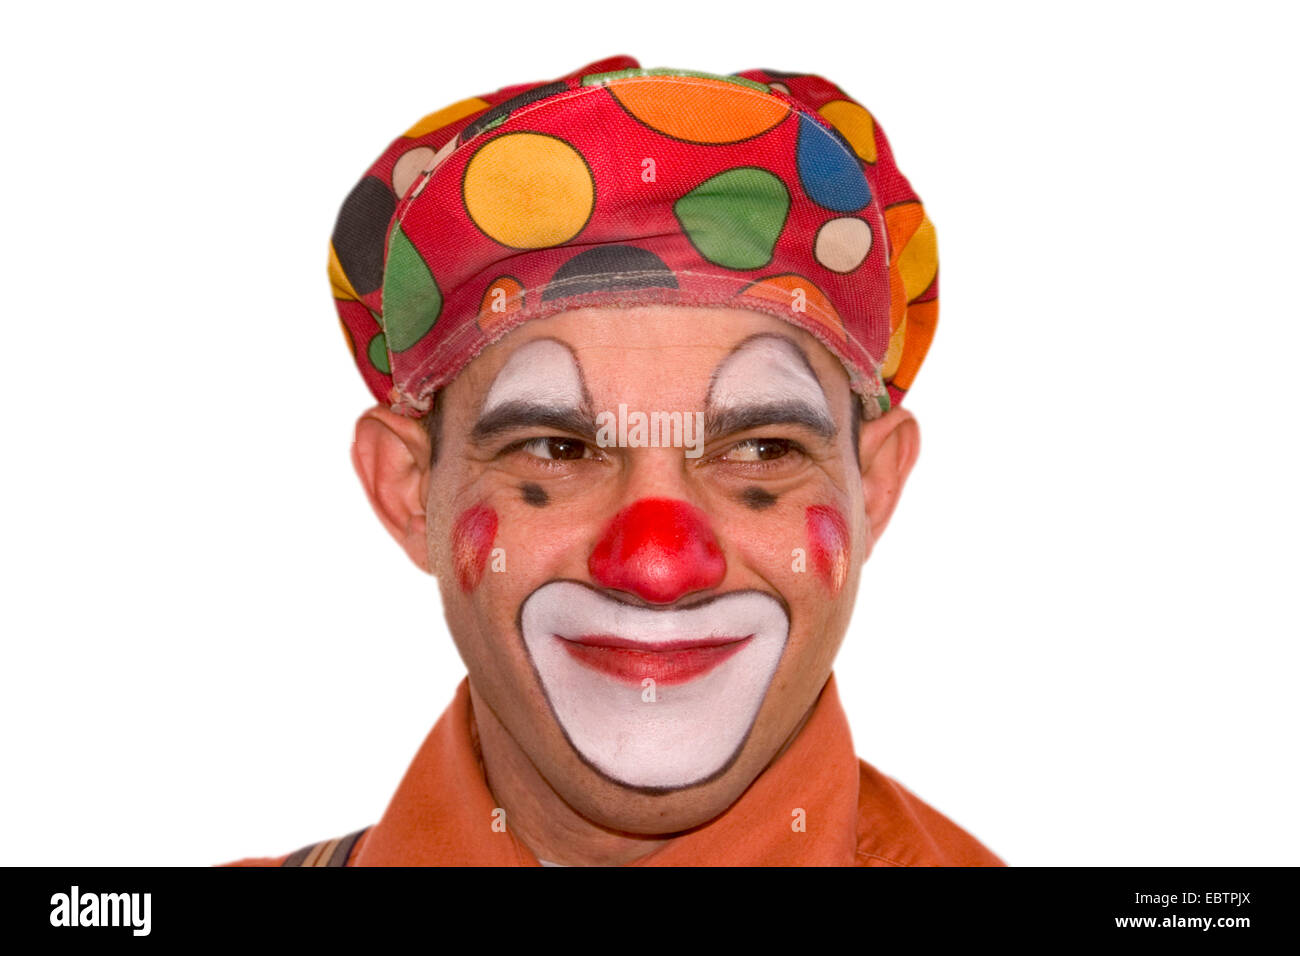 clown, portrait Stock Photo